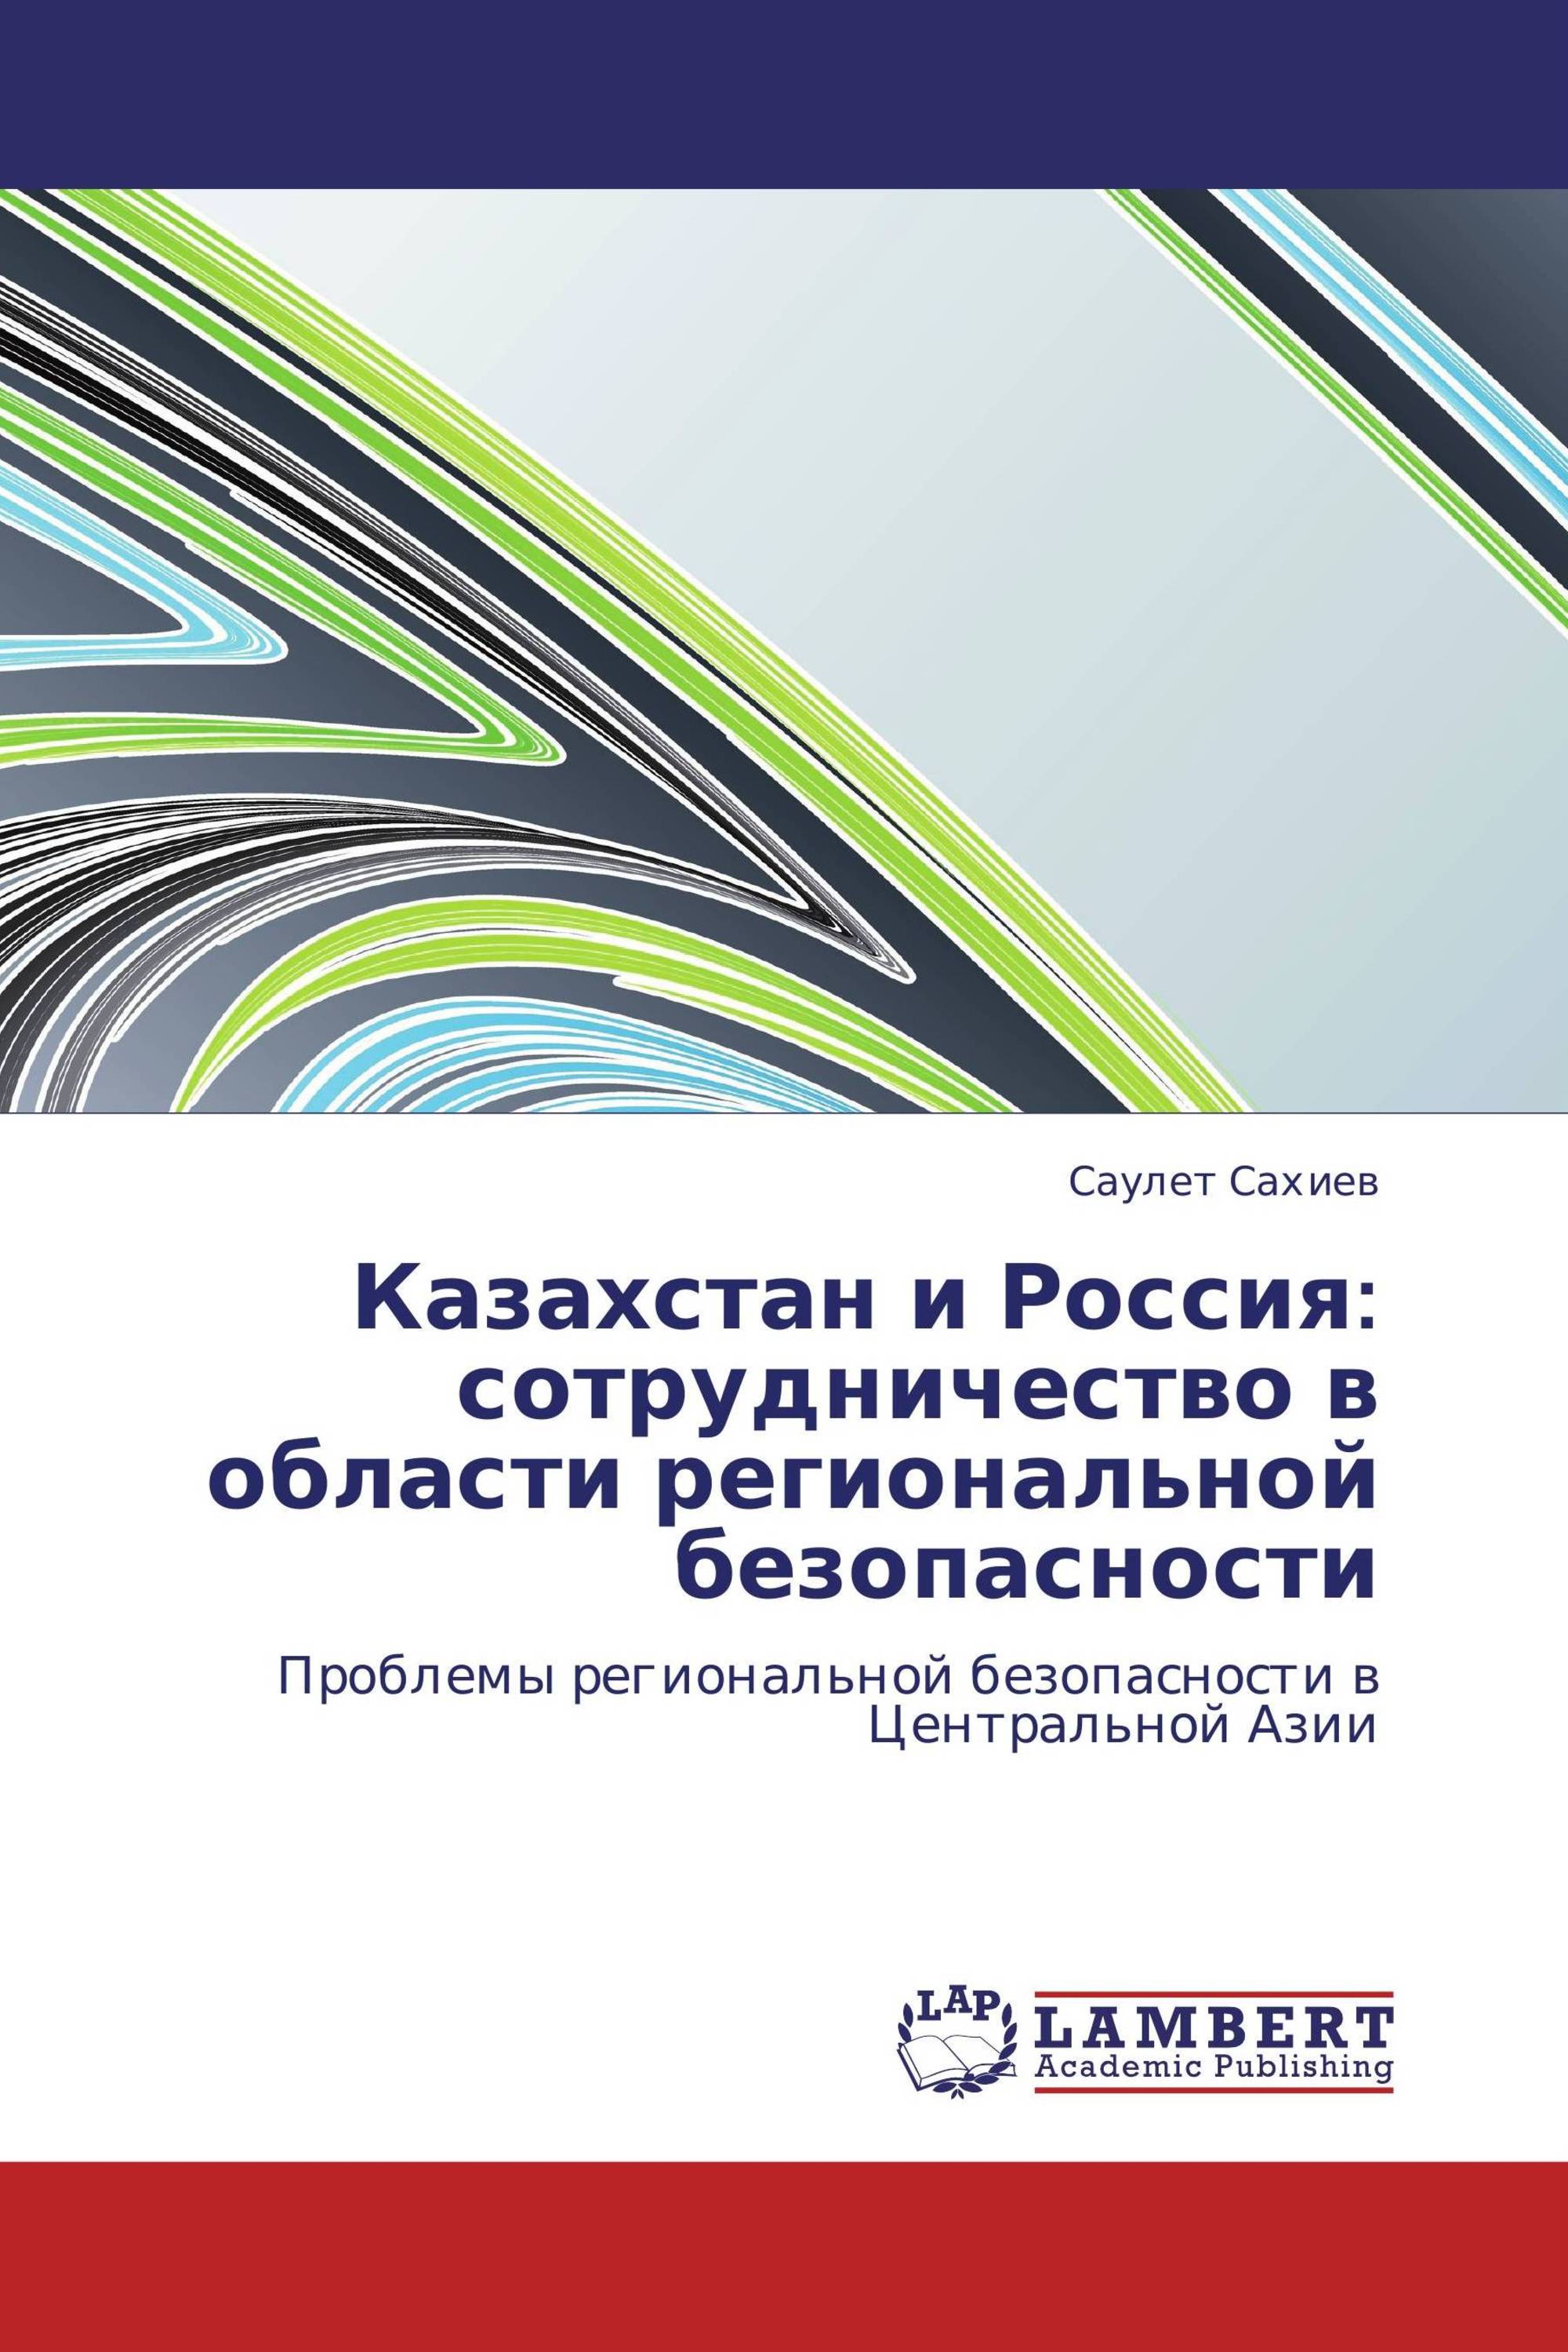 Казахстан и Россия: сотрудничество в области региональной безопасности